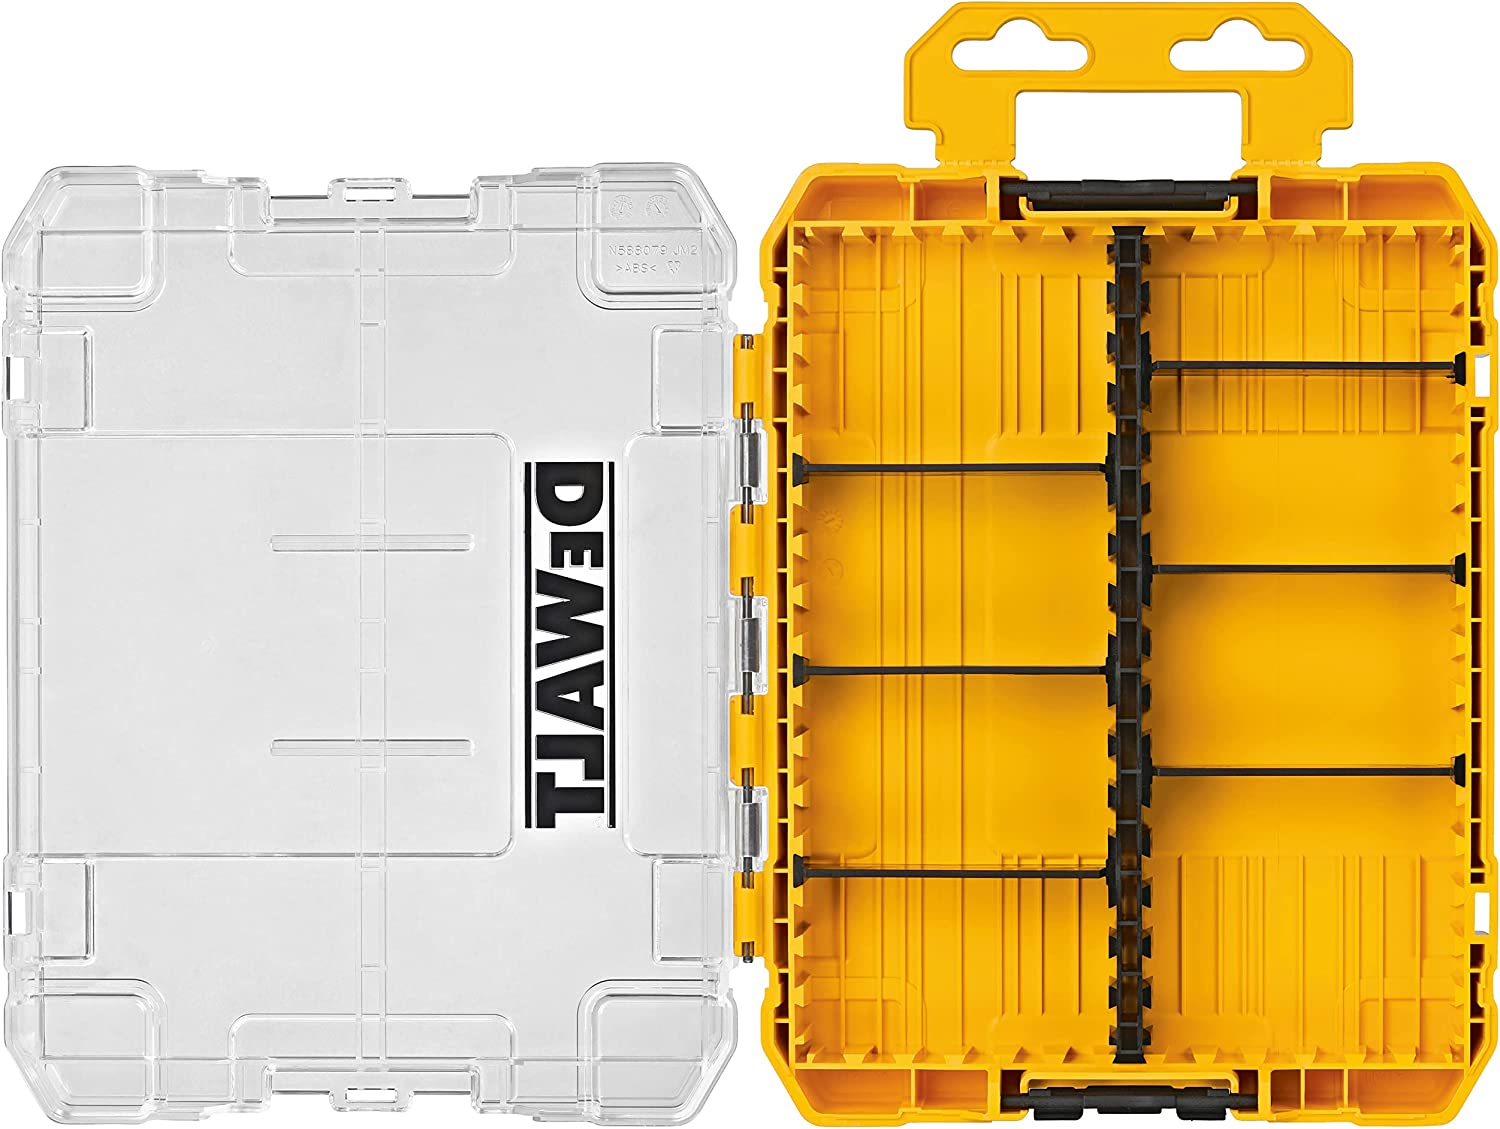 デウォルト(DEWALT) タフケース (中) デバイダー付き 工具箱 収納ケース ツールボックス 小物入れ 透明蓋 DWAN2190